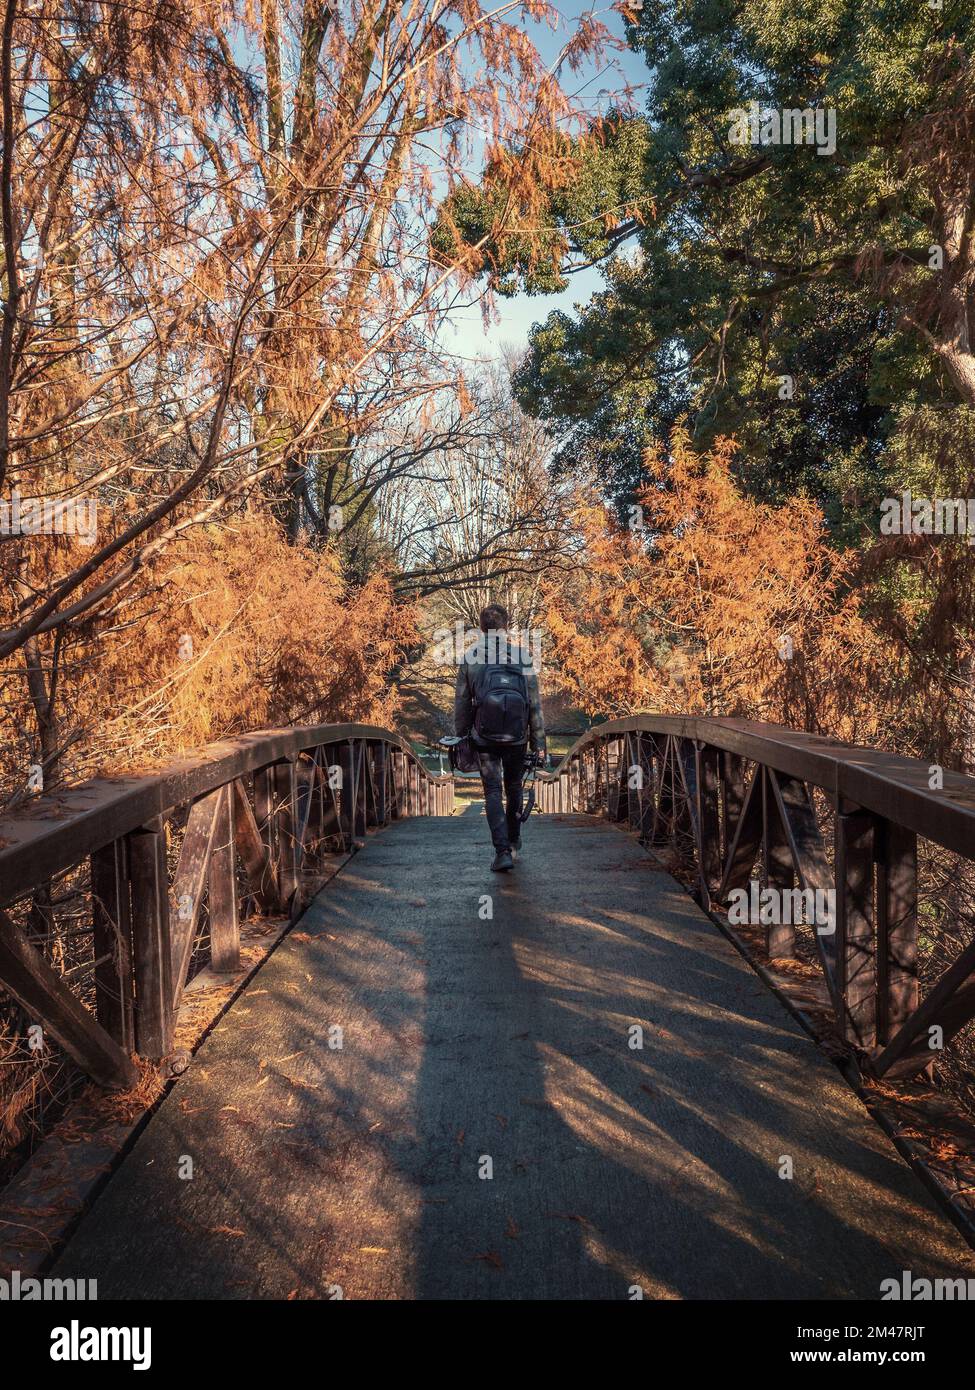 Mann mit Rucksack auf Brücke im Herbst-Waldpark. Reise-, Abenteuer- und Tourismuskonzept. Stockfoto